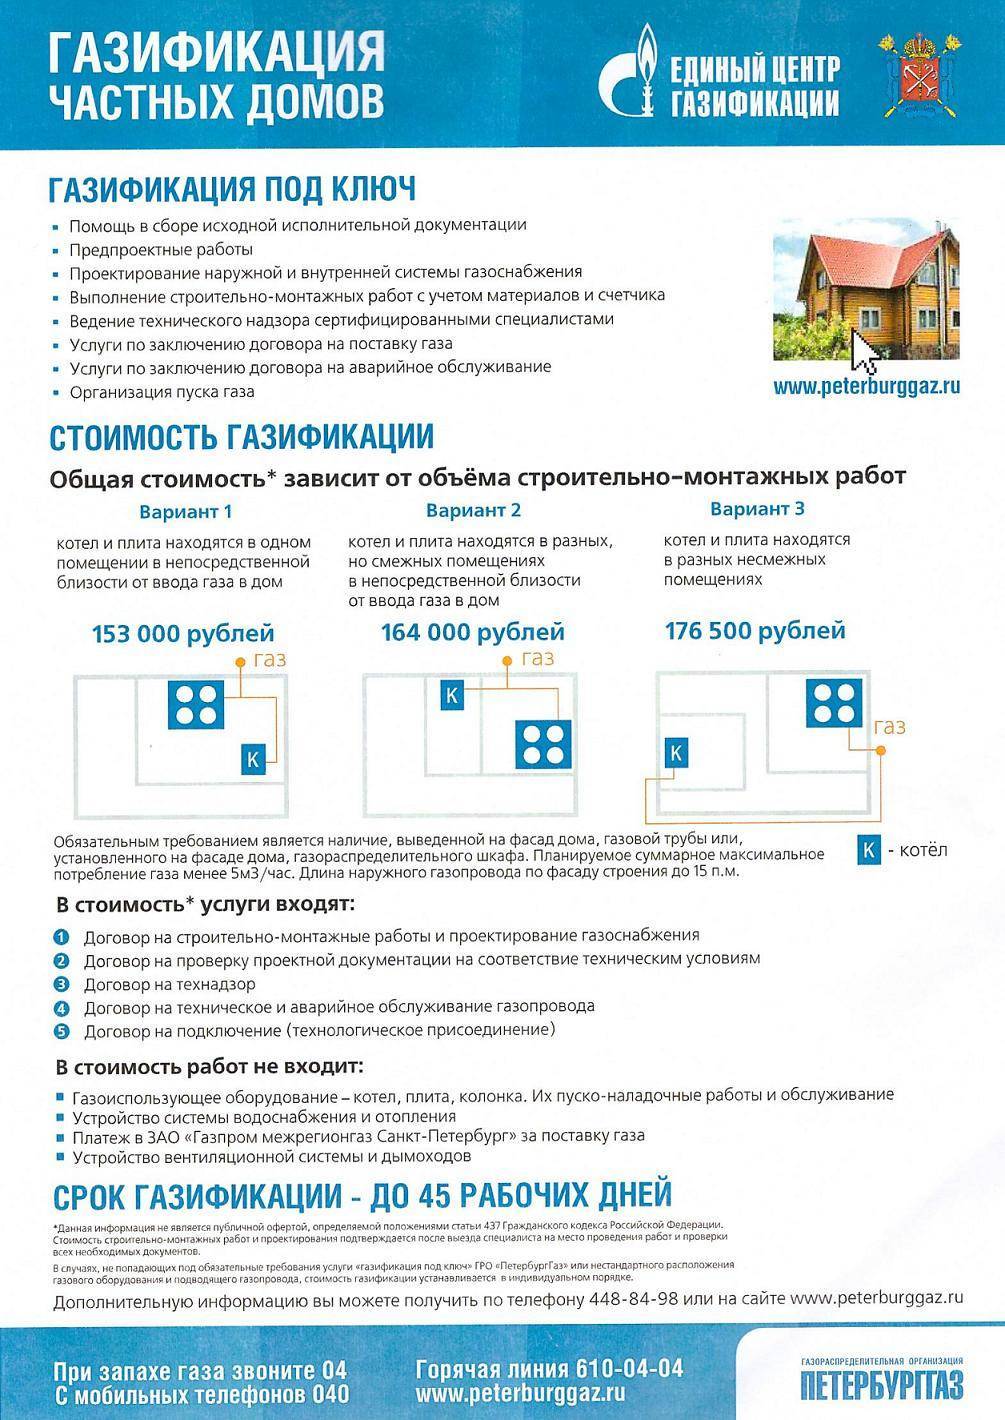 Газификация частных домов: проект, документы, порядок проведения работ :: syl.ru